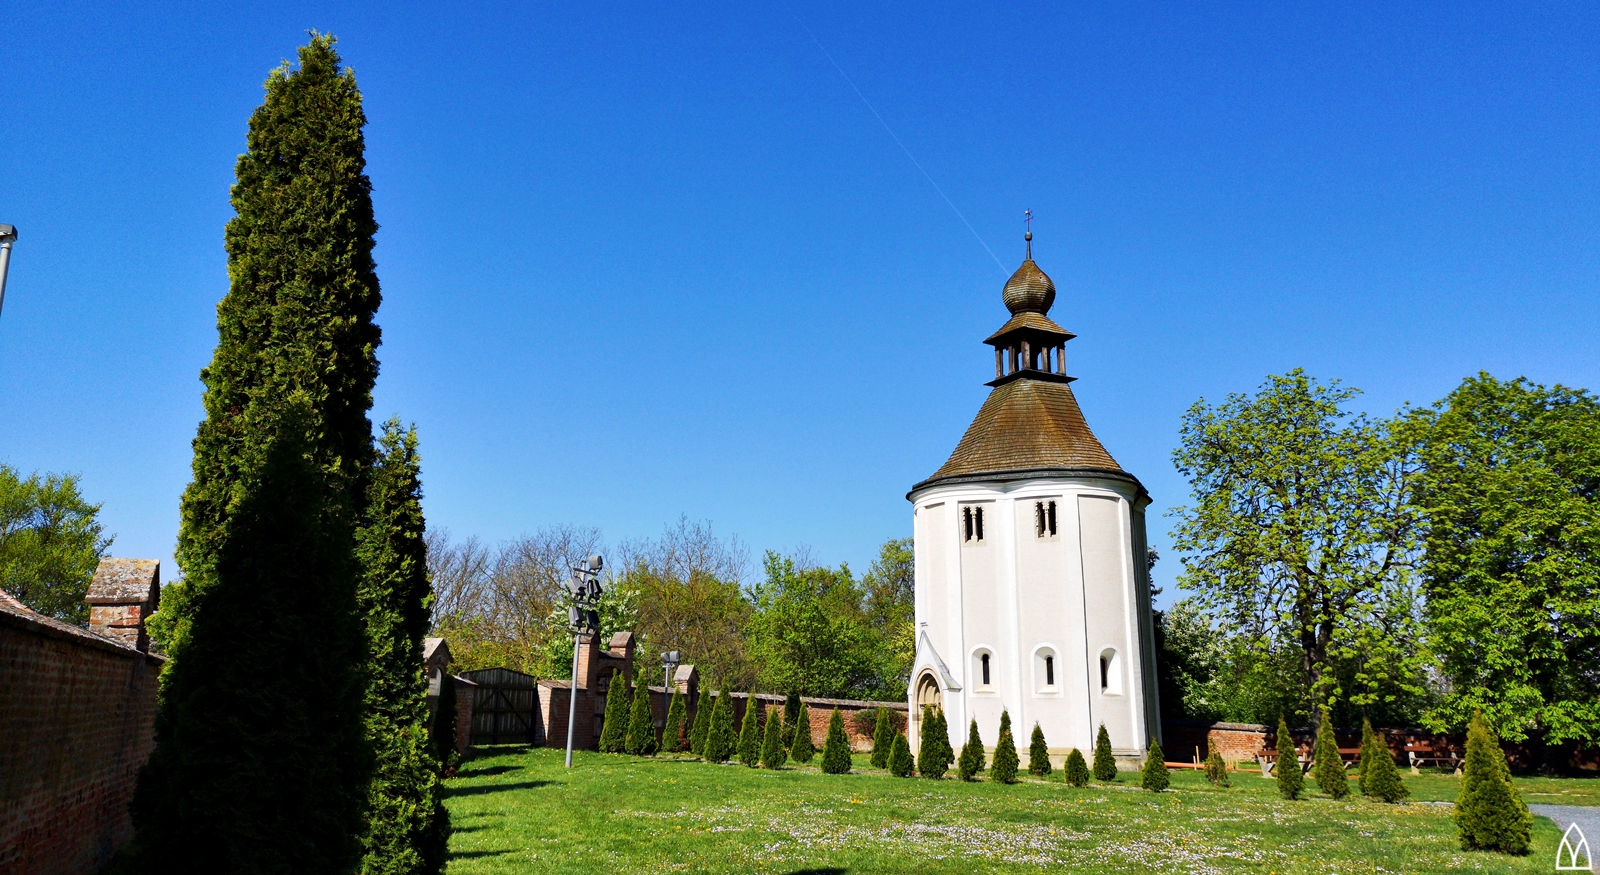 Rotundák Magyarországon 1. – Négykaréjos templomok